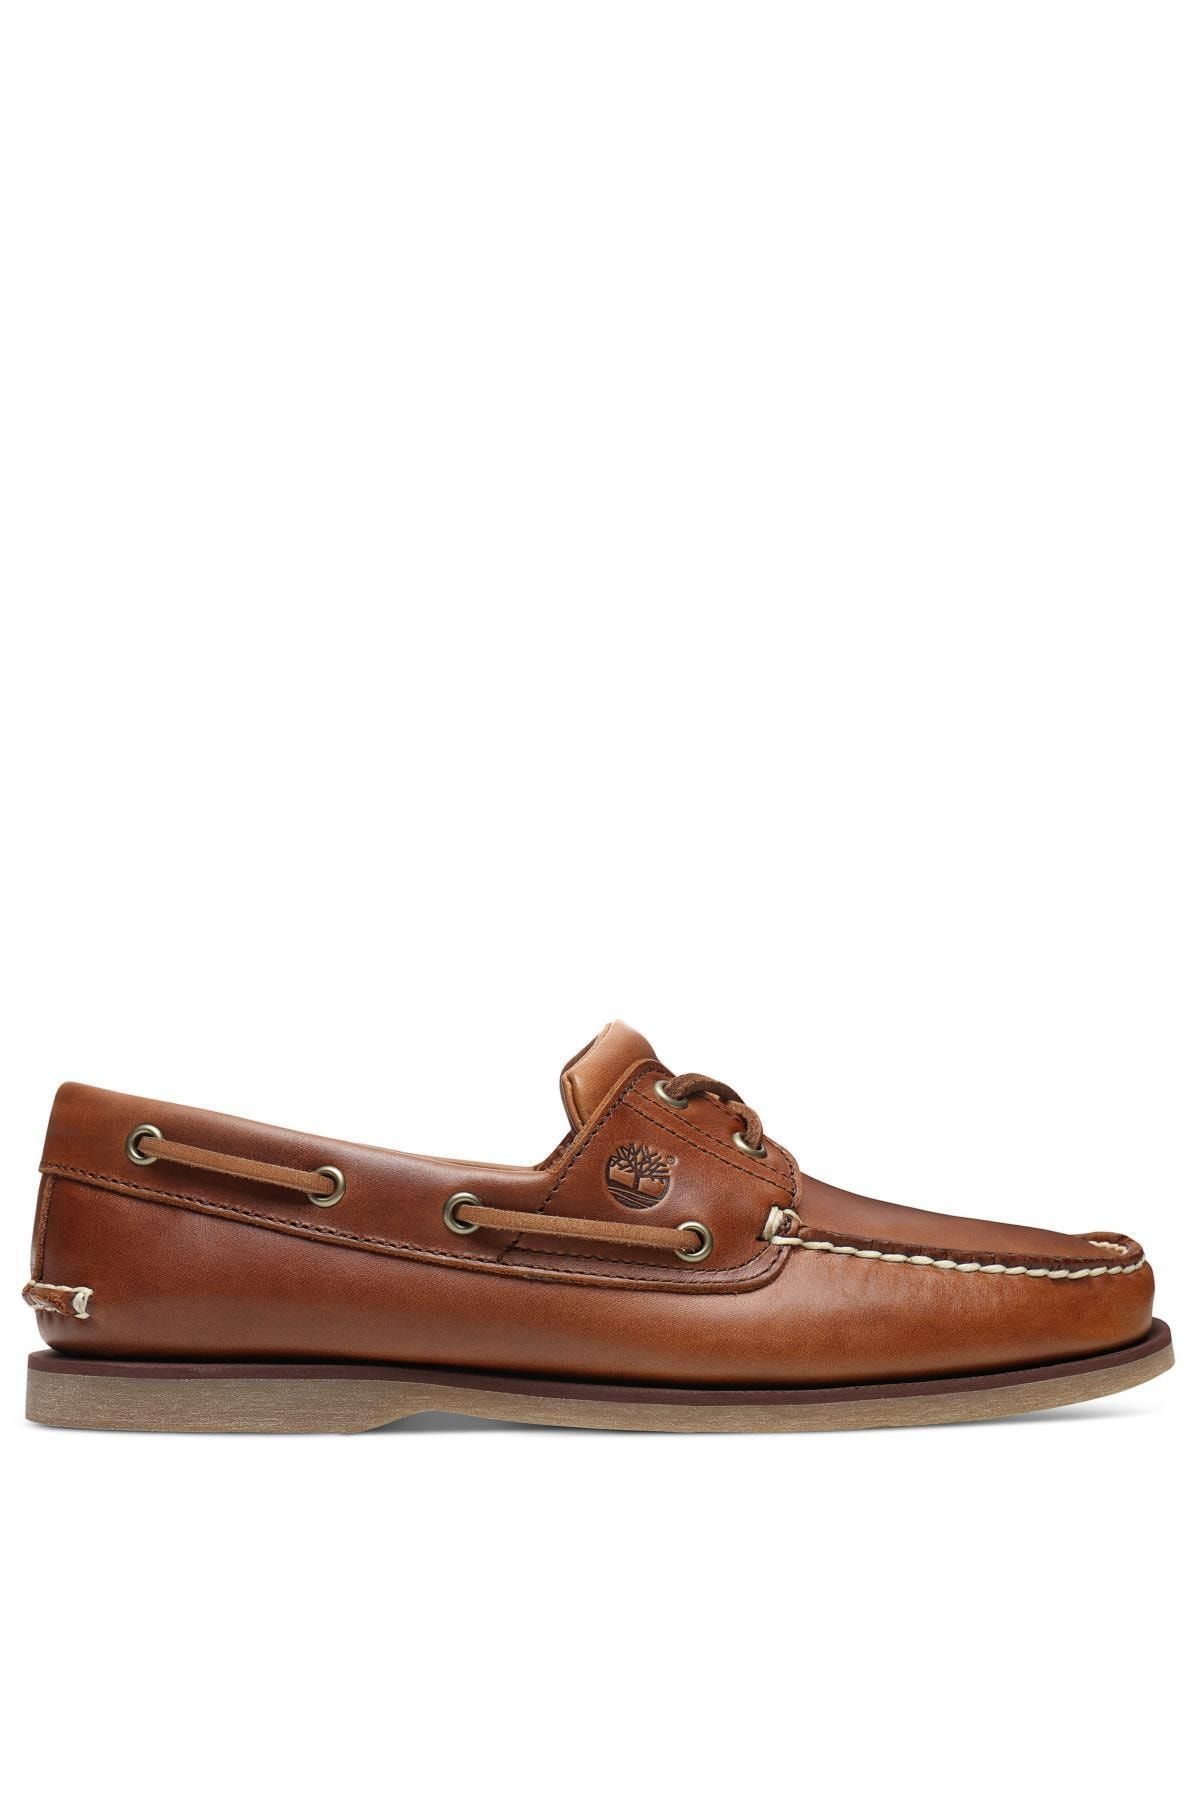 Timberland Classic Erkek Ayakkabı Kahverengi